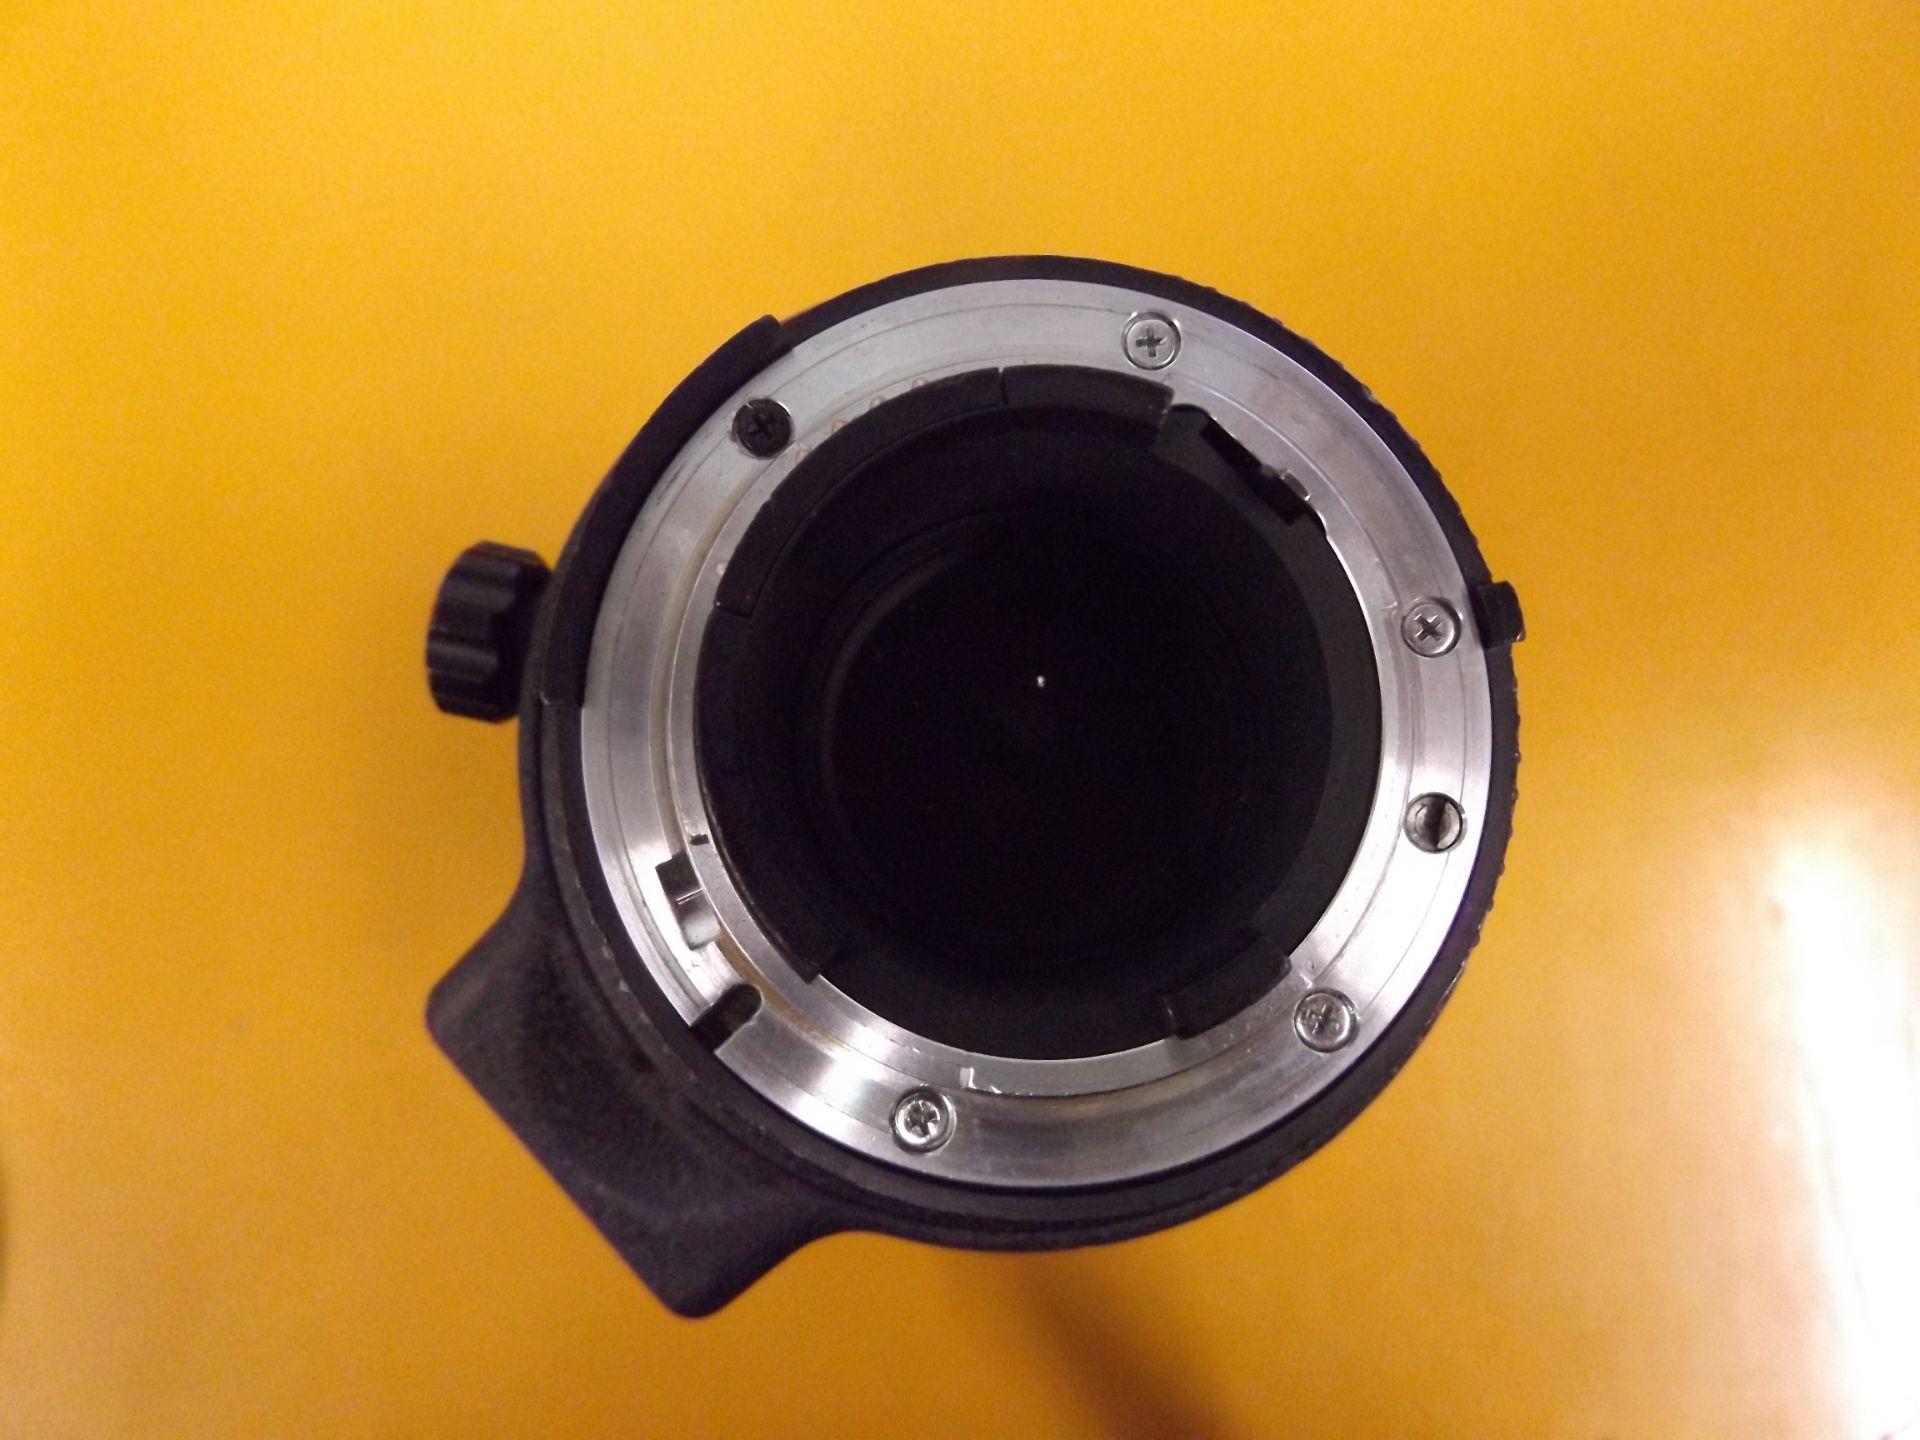 Nikon ED AF Nikkor 80-200mm 1:2.8 D Lense with Leather Case - Image 4 of 10